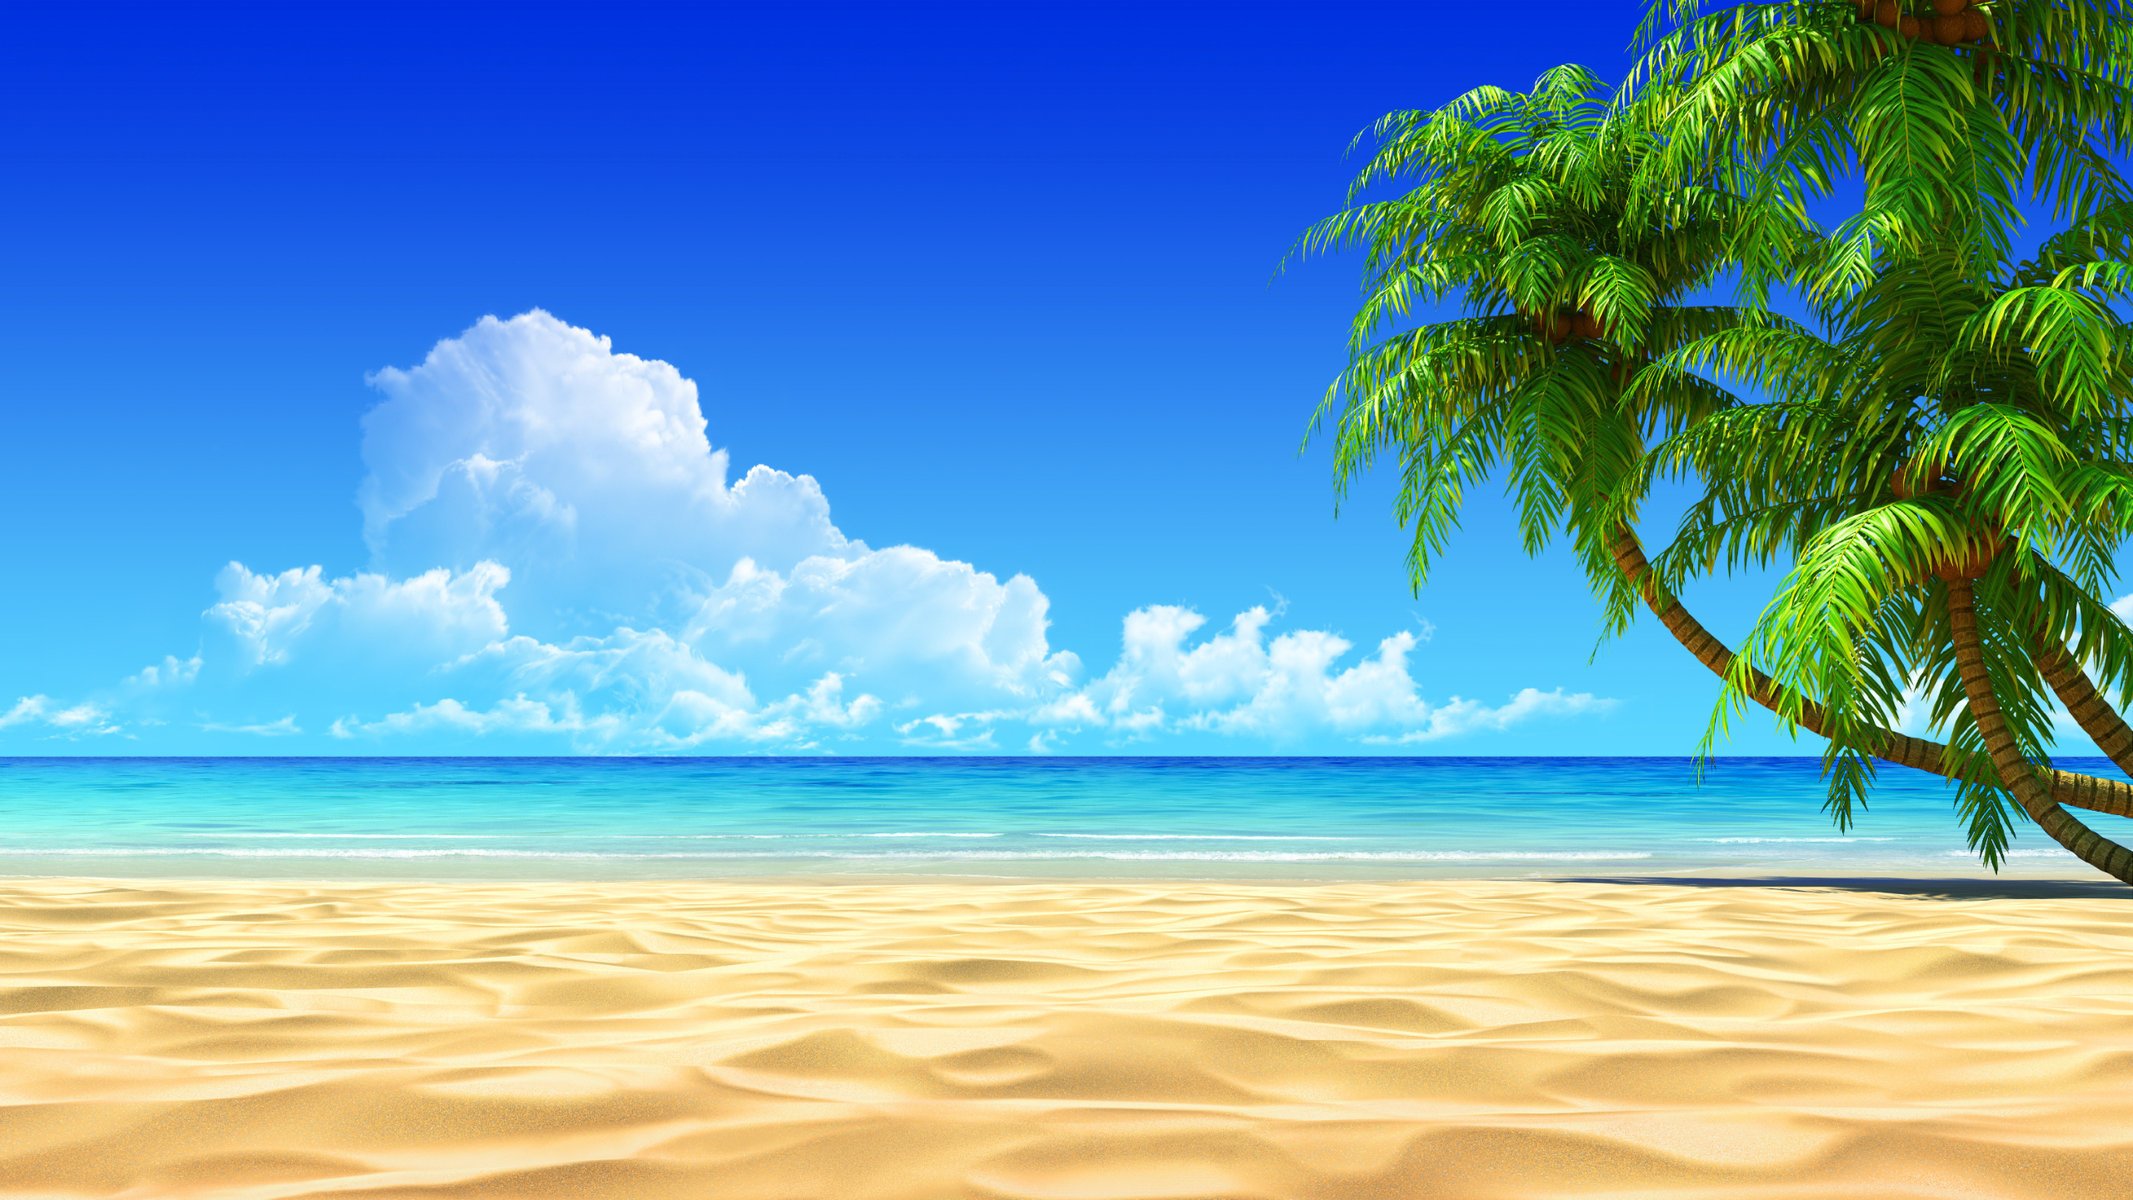 Тропический пейзаж с пальмами и песком